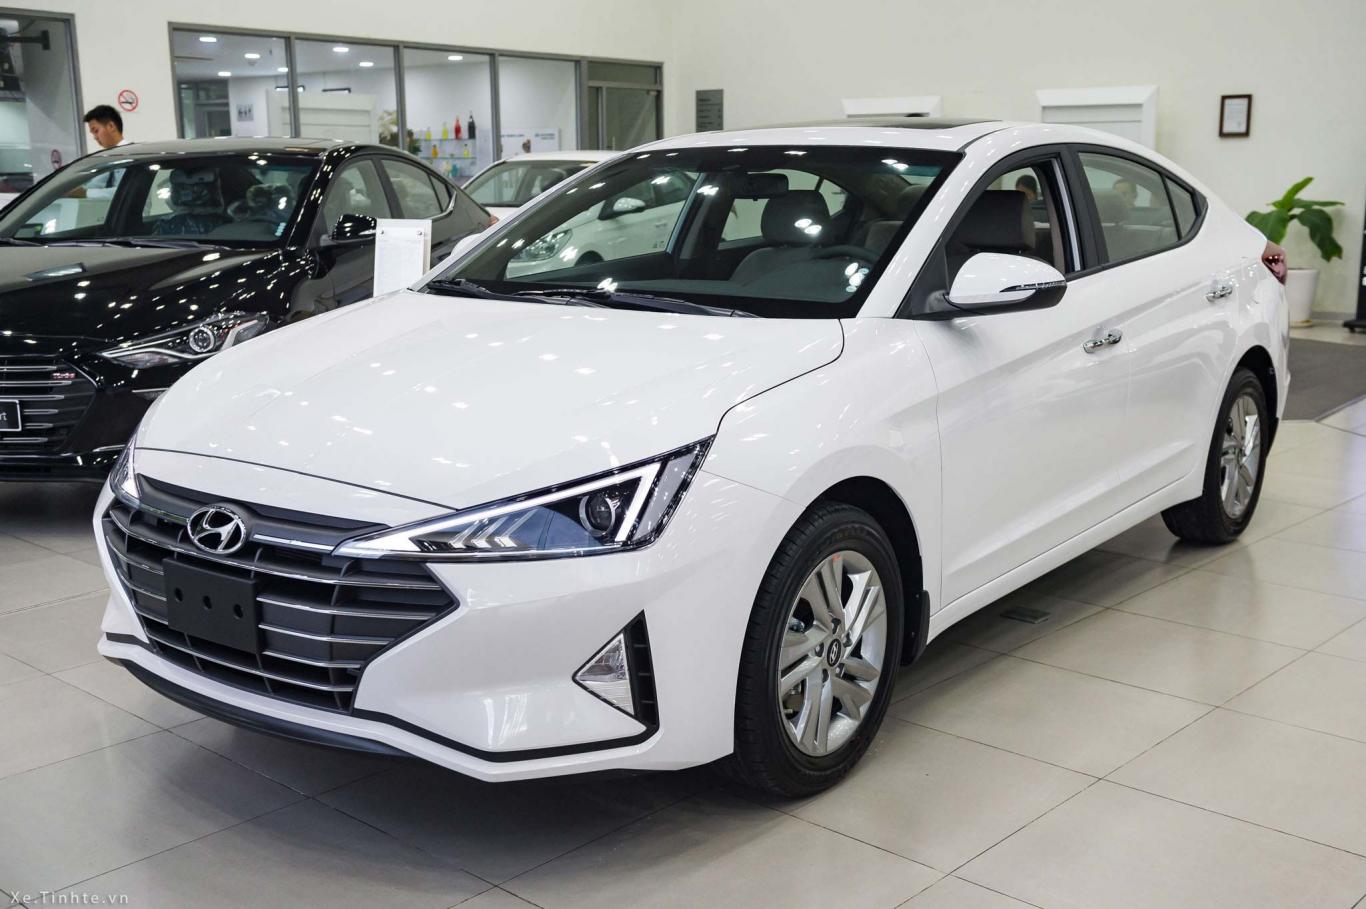 Hyundai Elantra dòng xe ô tô dưới 700 triệu đồng